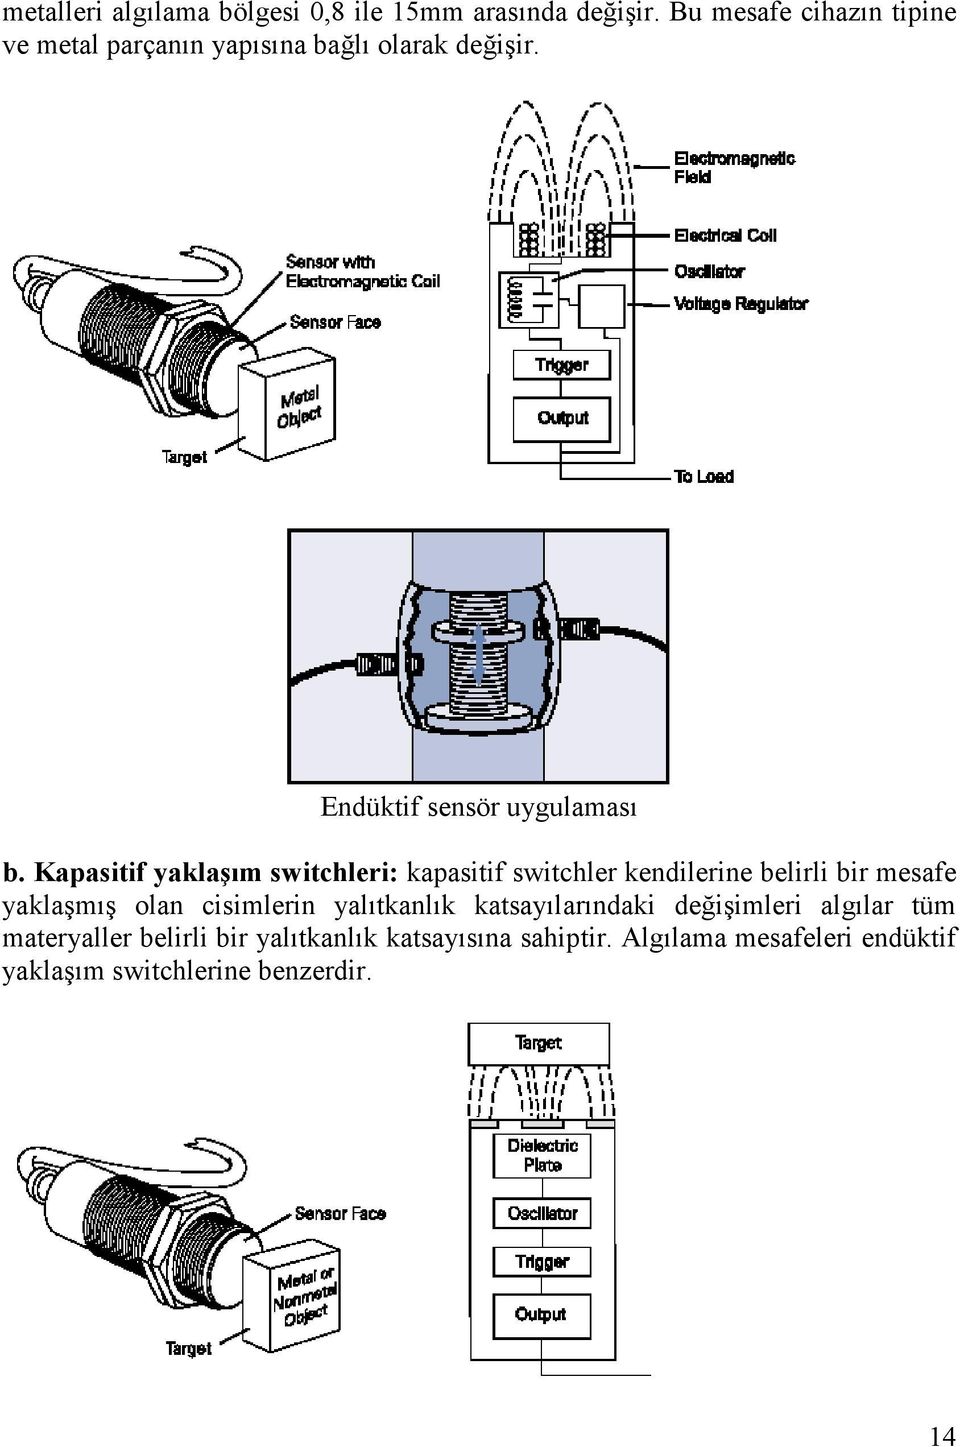 Kapasitif yaklaşım switchleri: kapasitif switchler kendilerine belirli bir mesafe yaklaşmış olan cisimlerin